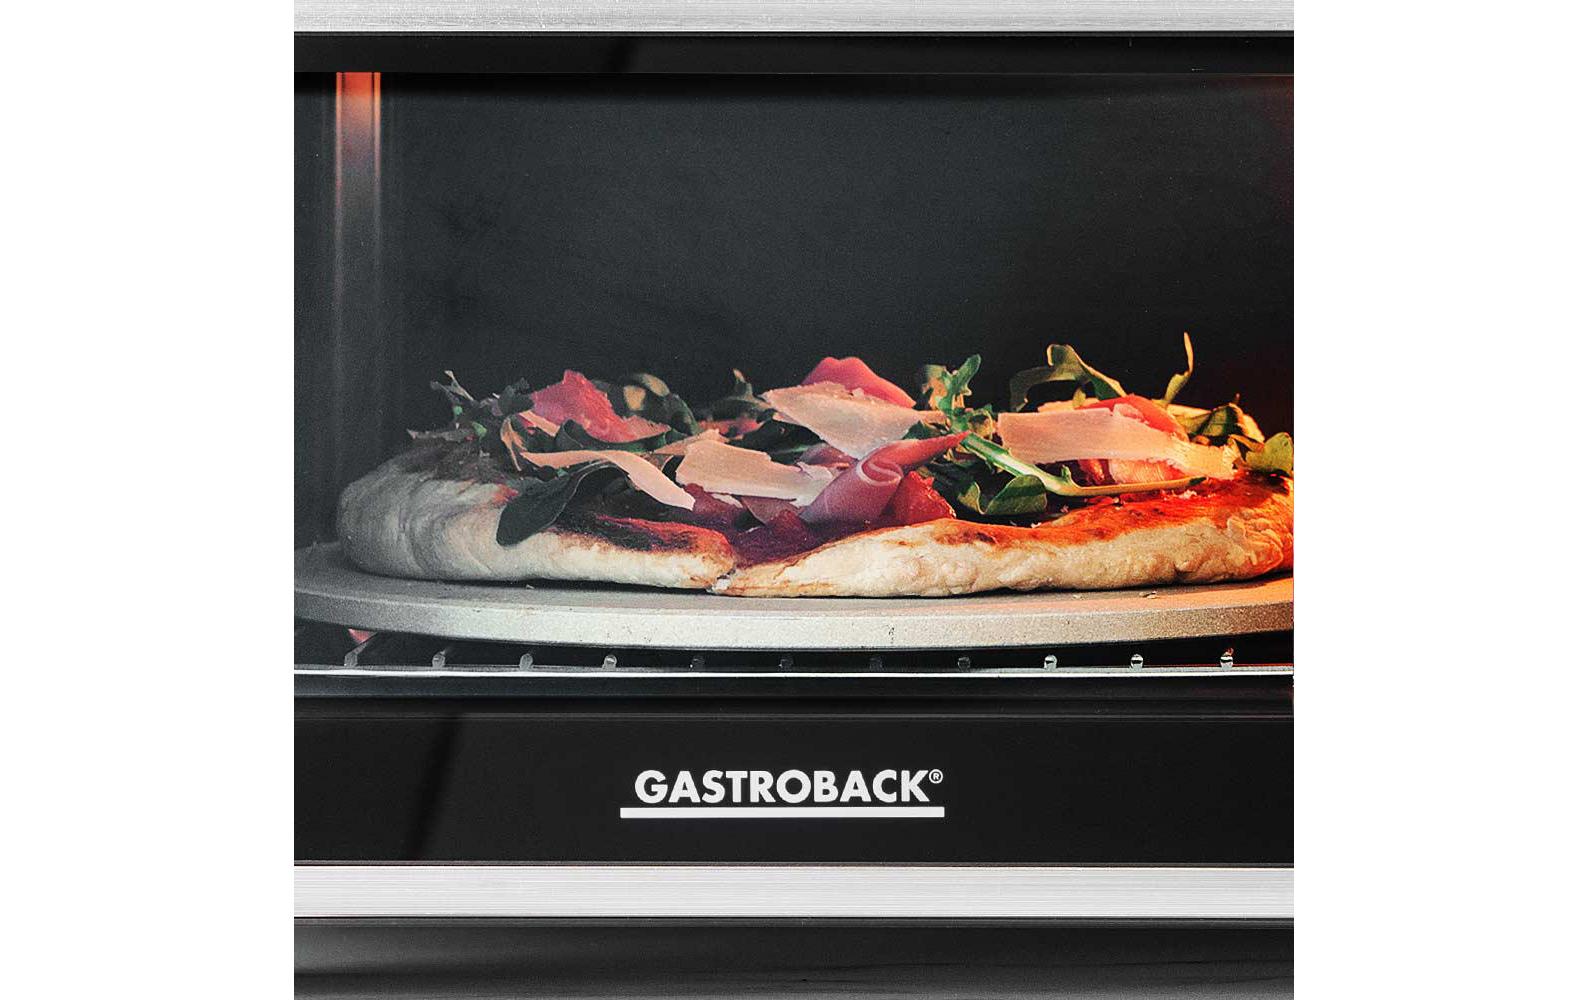 Gastroback Backofen Design Bistro Bake & Grill